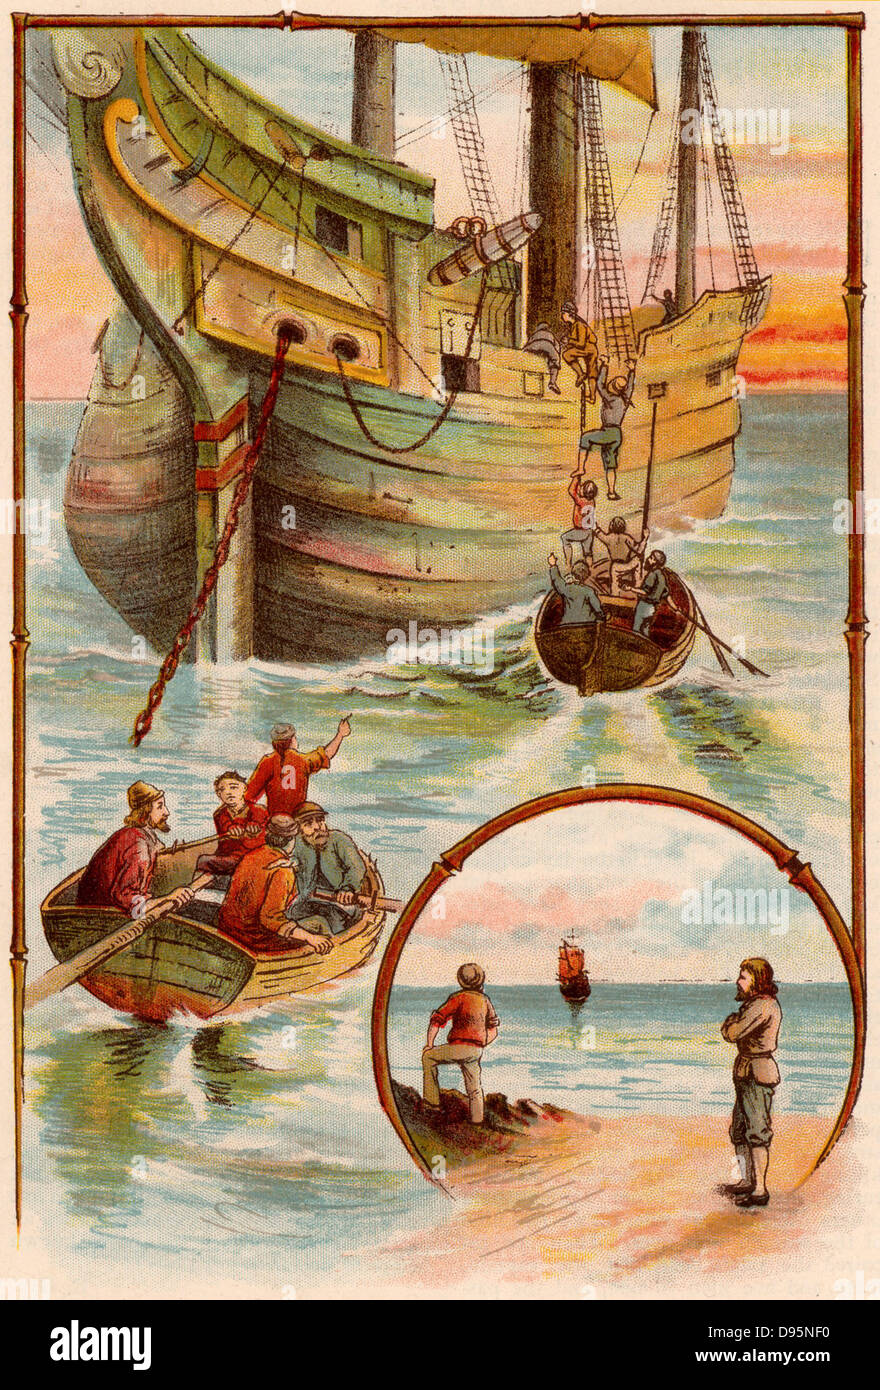 Das Leben und die seltsamen überraschenden Abenteuer des Robinson Crusoe von Daniel Defoe. Erstmals im Jahre 1719 veröffentlicht, es wird behauptet, die erste englische Roman zu werden. Crusoe hilft Das englische Schiff aus der Meuterer zu erlangen. Die meuterer sind auf der Insel die abgebrochen wurden, während sie Crusoe und Freitag und die loyale Mitglieder der Crew segeln für England, die Crusoe nicht für 28 Jahre gesehen hat. Von "Blasen" c 1900 von Dr Barnados Wohnungen für Kinder veröffentlicht. Oleograph. Stockfoto